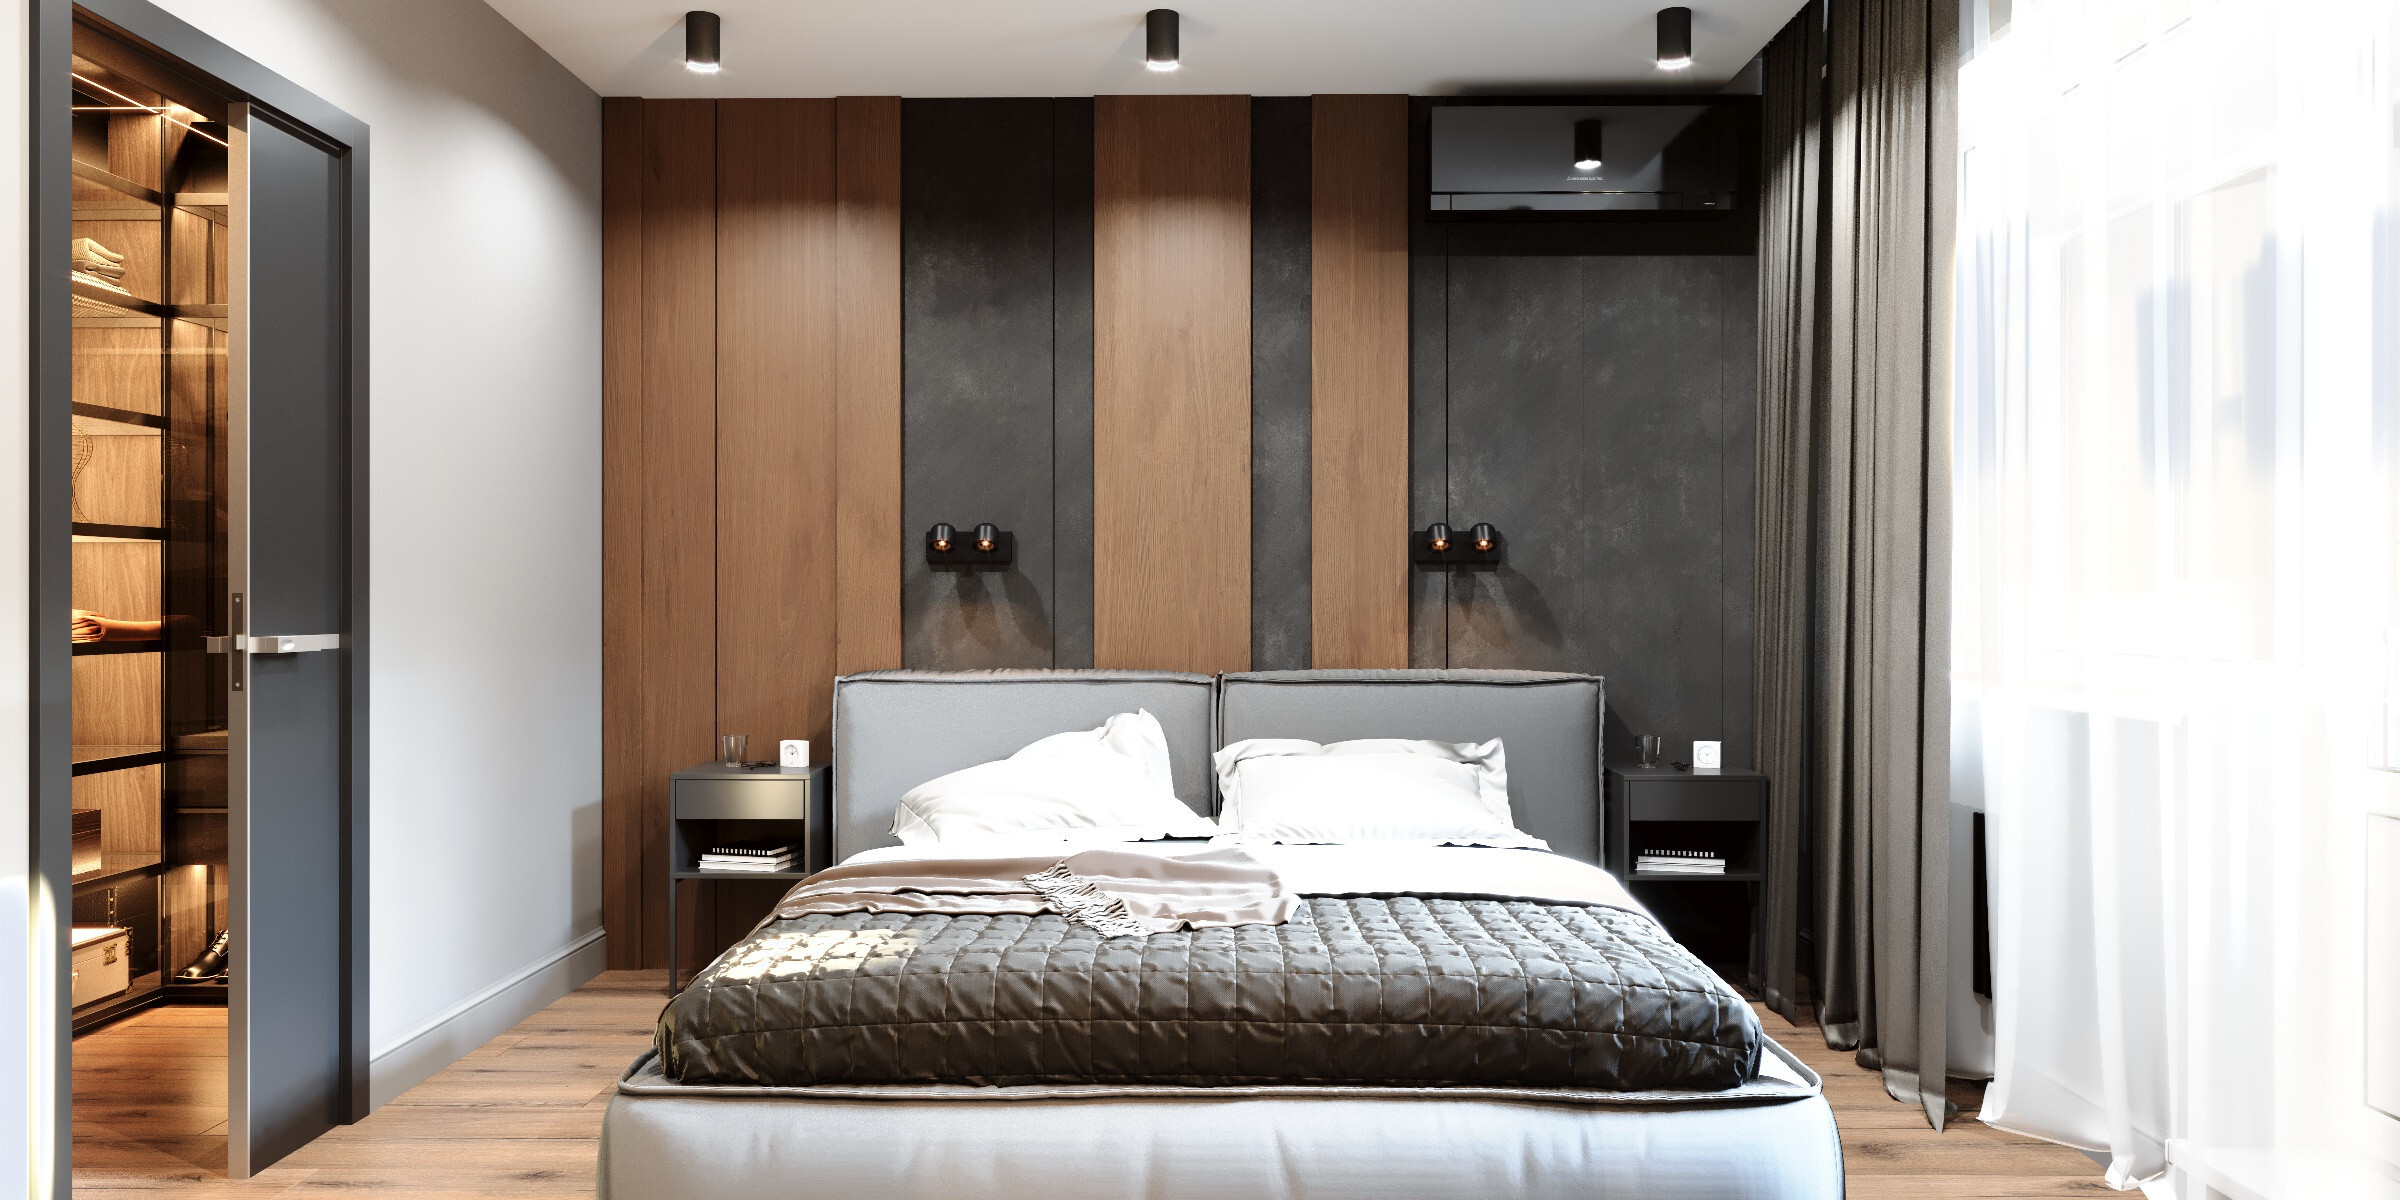 Интерьер спальни с бра над кроватью, подсветкой настенной, подсветкой светодиодной и светильниками над кроватью в современном стиле и в стиле лофт